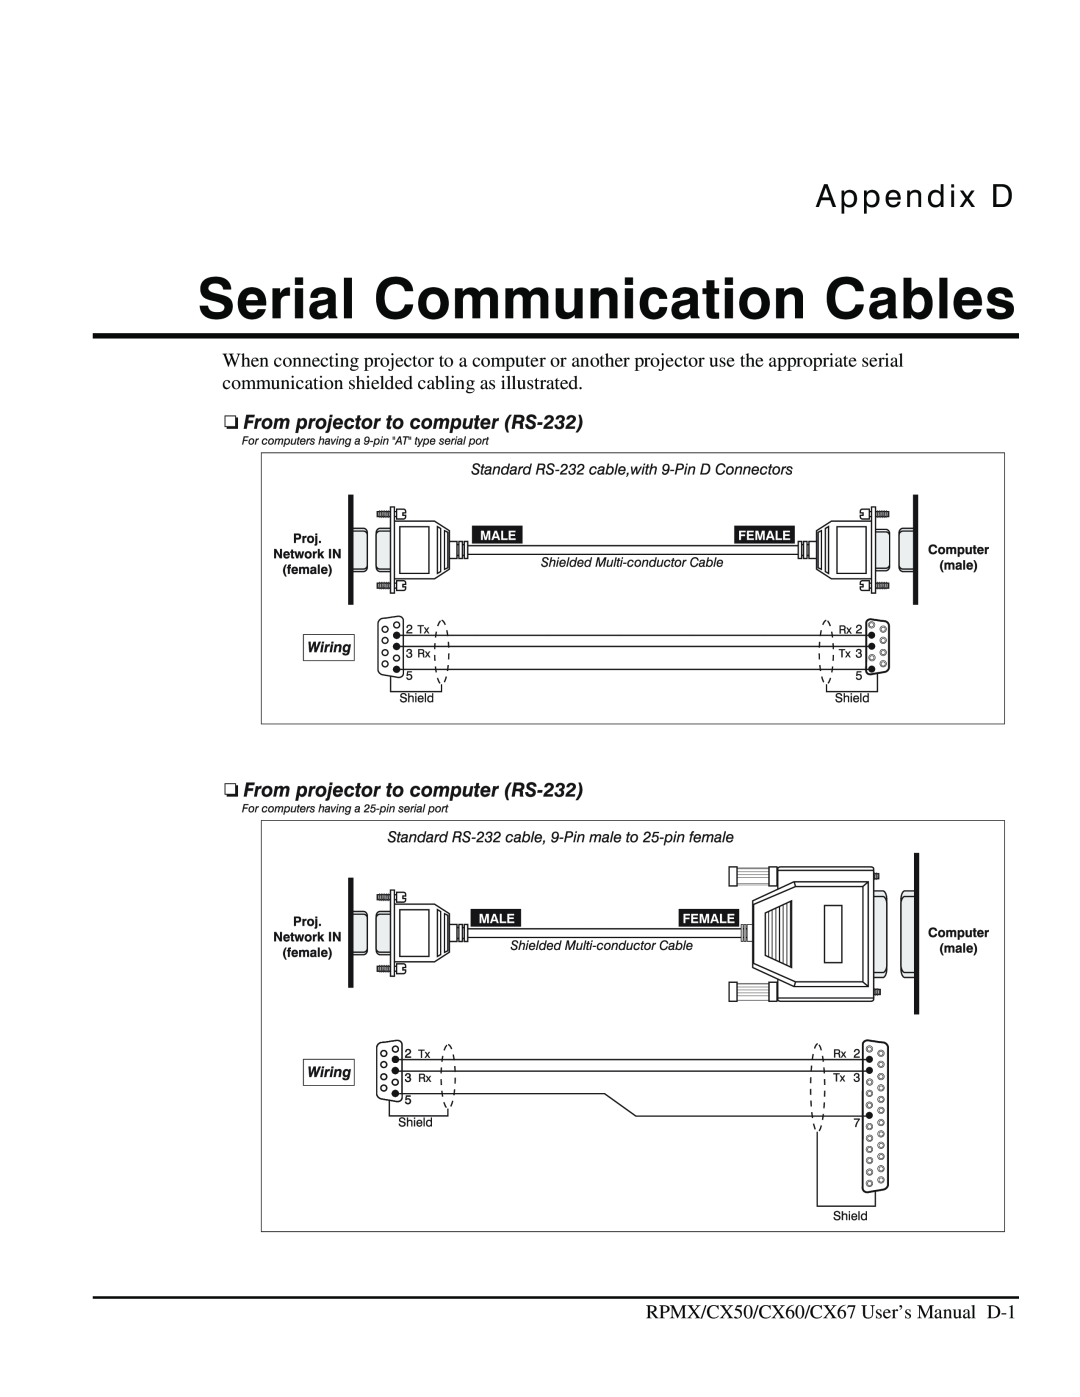 Christie Digital Systems CX60, CX50, CX67 user manual Serial Communication Cables, Appendix D 